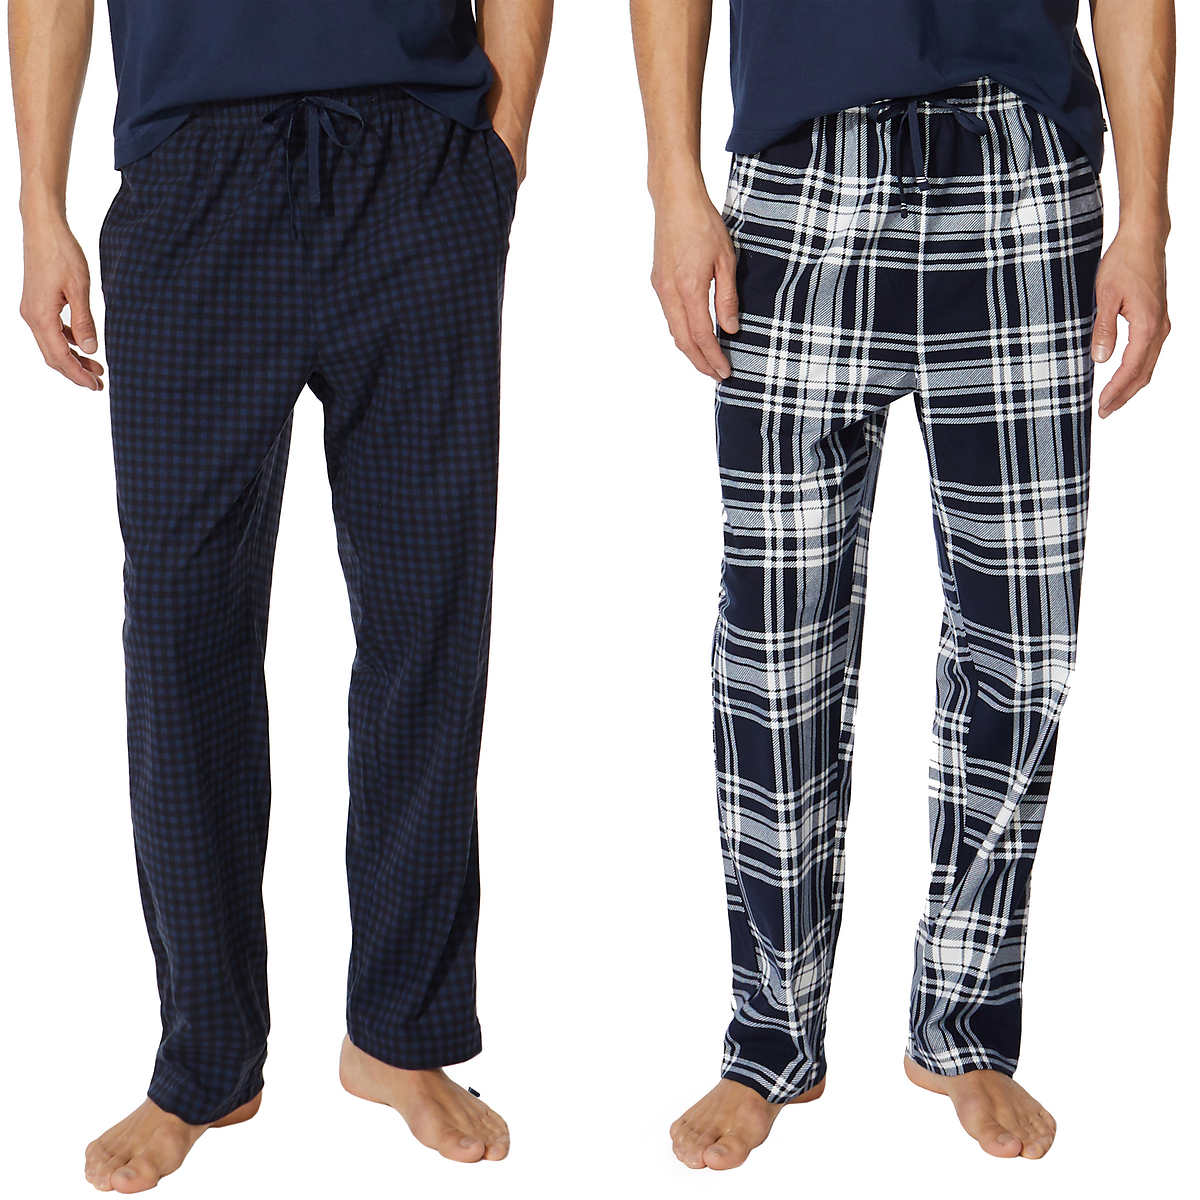 Nautica Plaid Pajama Pants Unisex Adult Red & Black Sleepwear